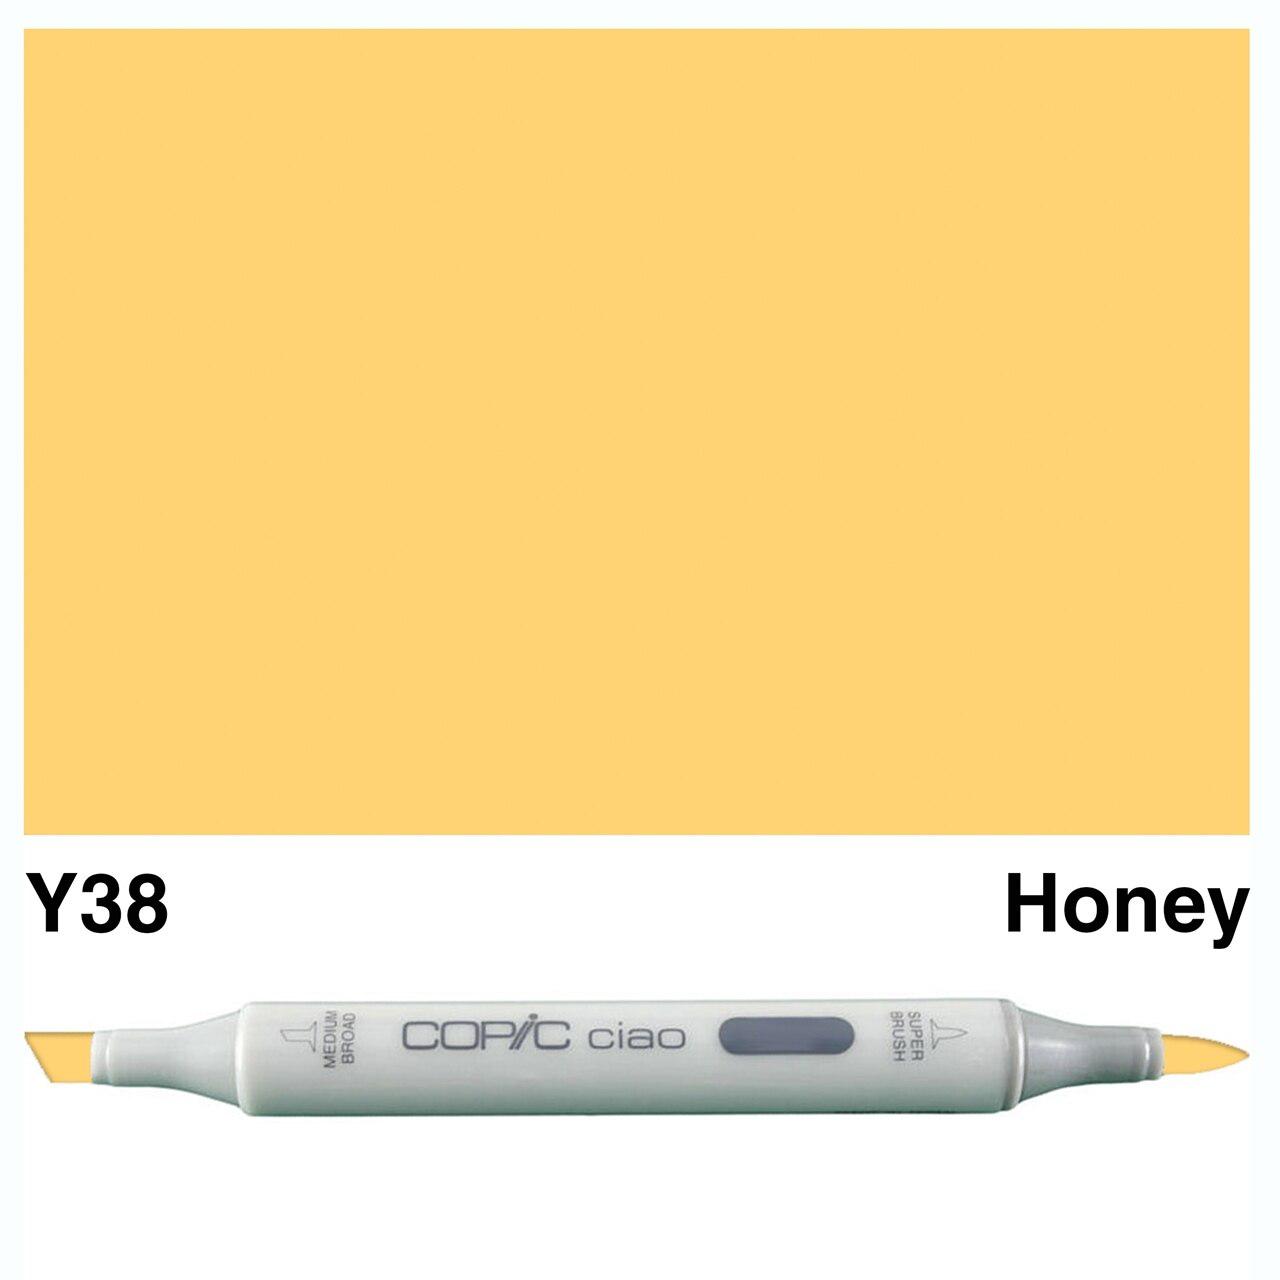 Copic - Ciao Marker - Honey - Y38-ScrapbookPal